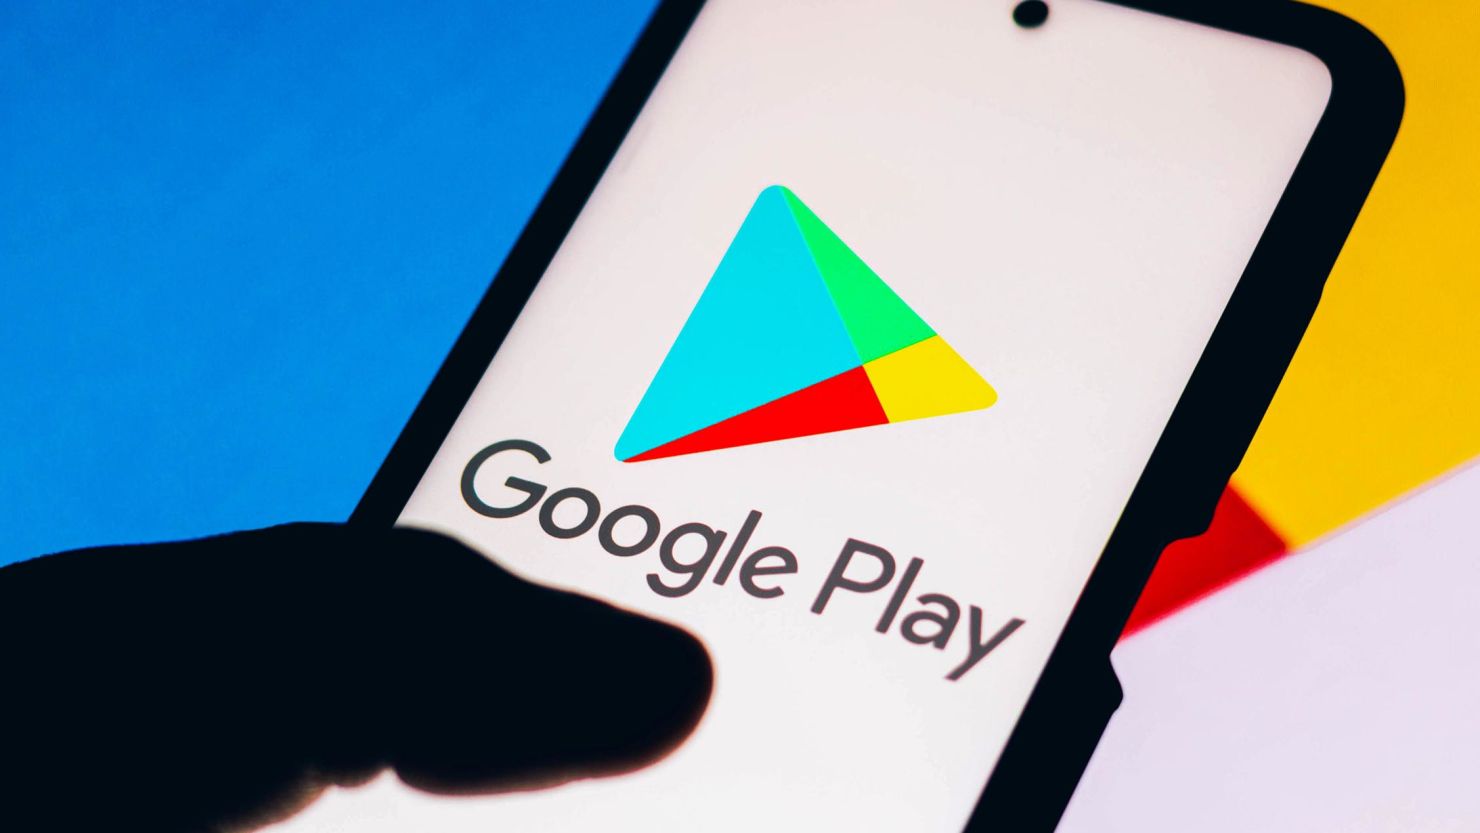 Google Play Store introduserer det nye betalingsalternativet "Be noen andre om å betale"